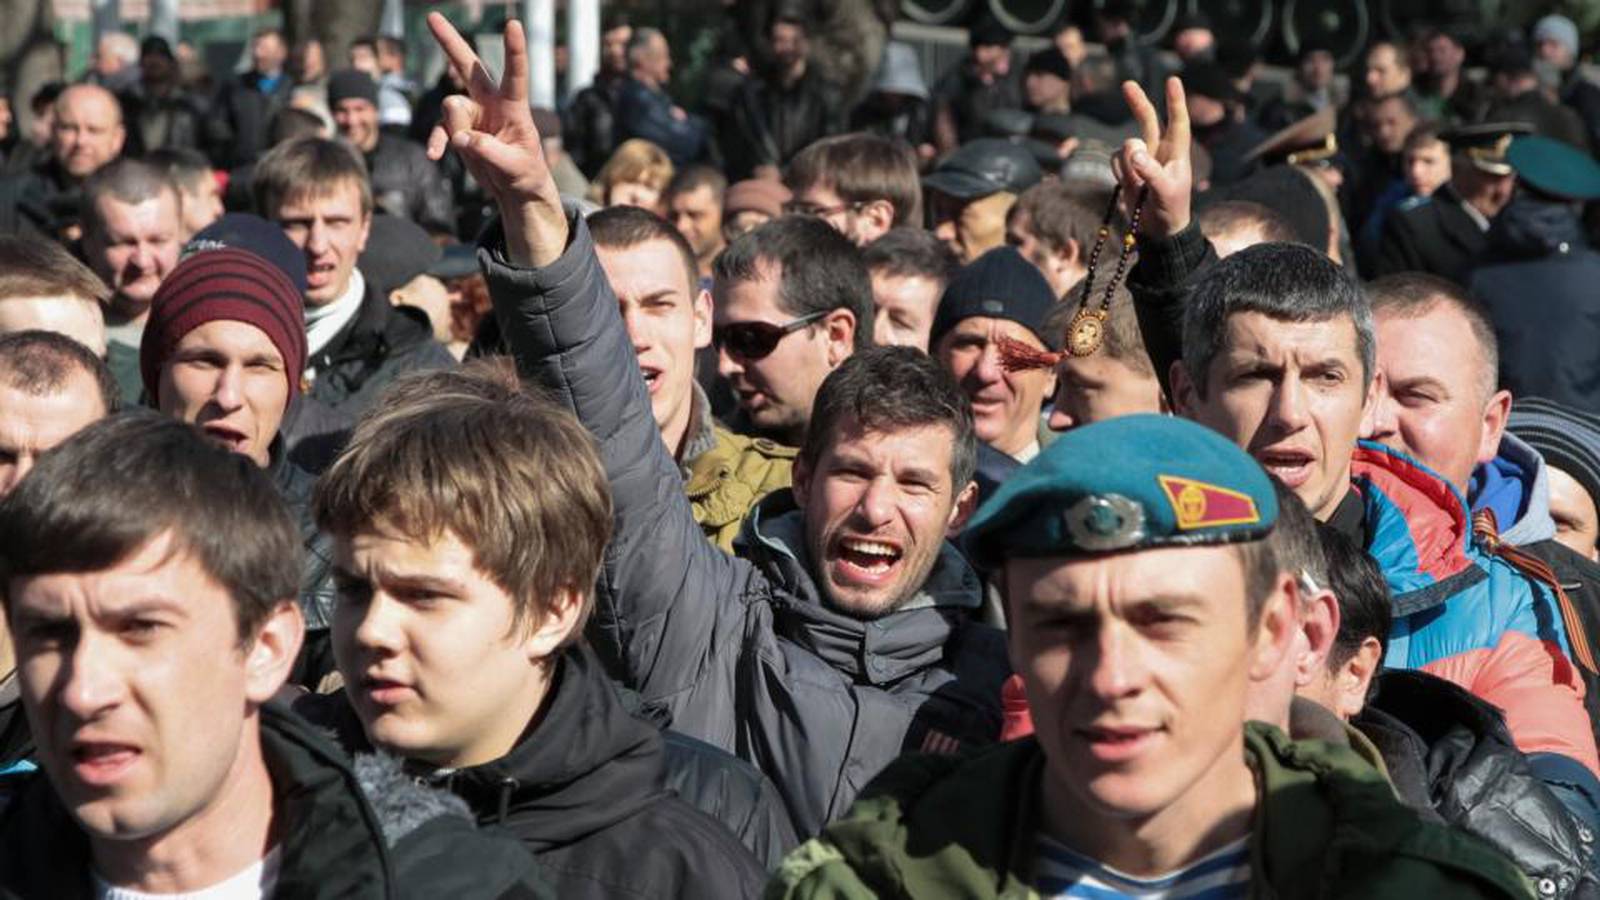 Нацменьшинства на Украине. Жестокие отряды нац меньшинств на Украине. Захват здания парламента в Крыму видео.